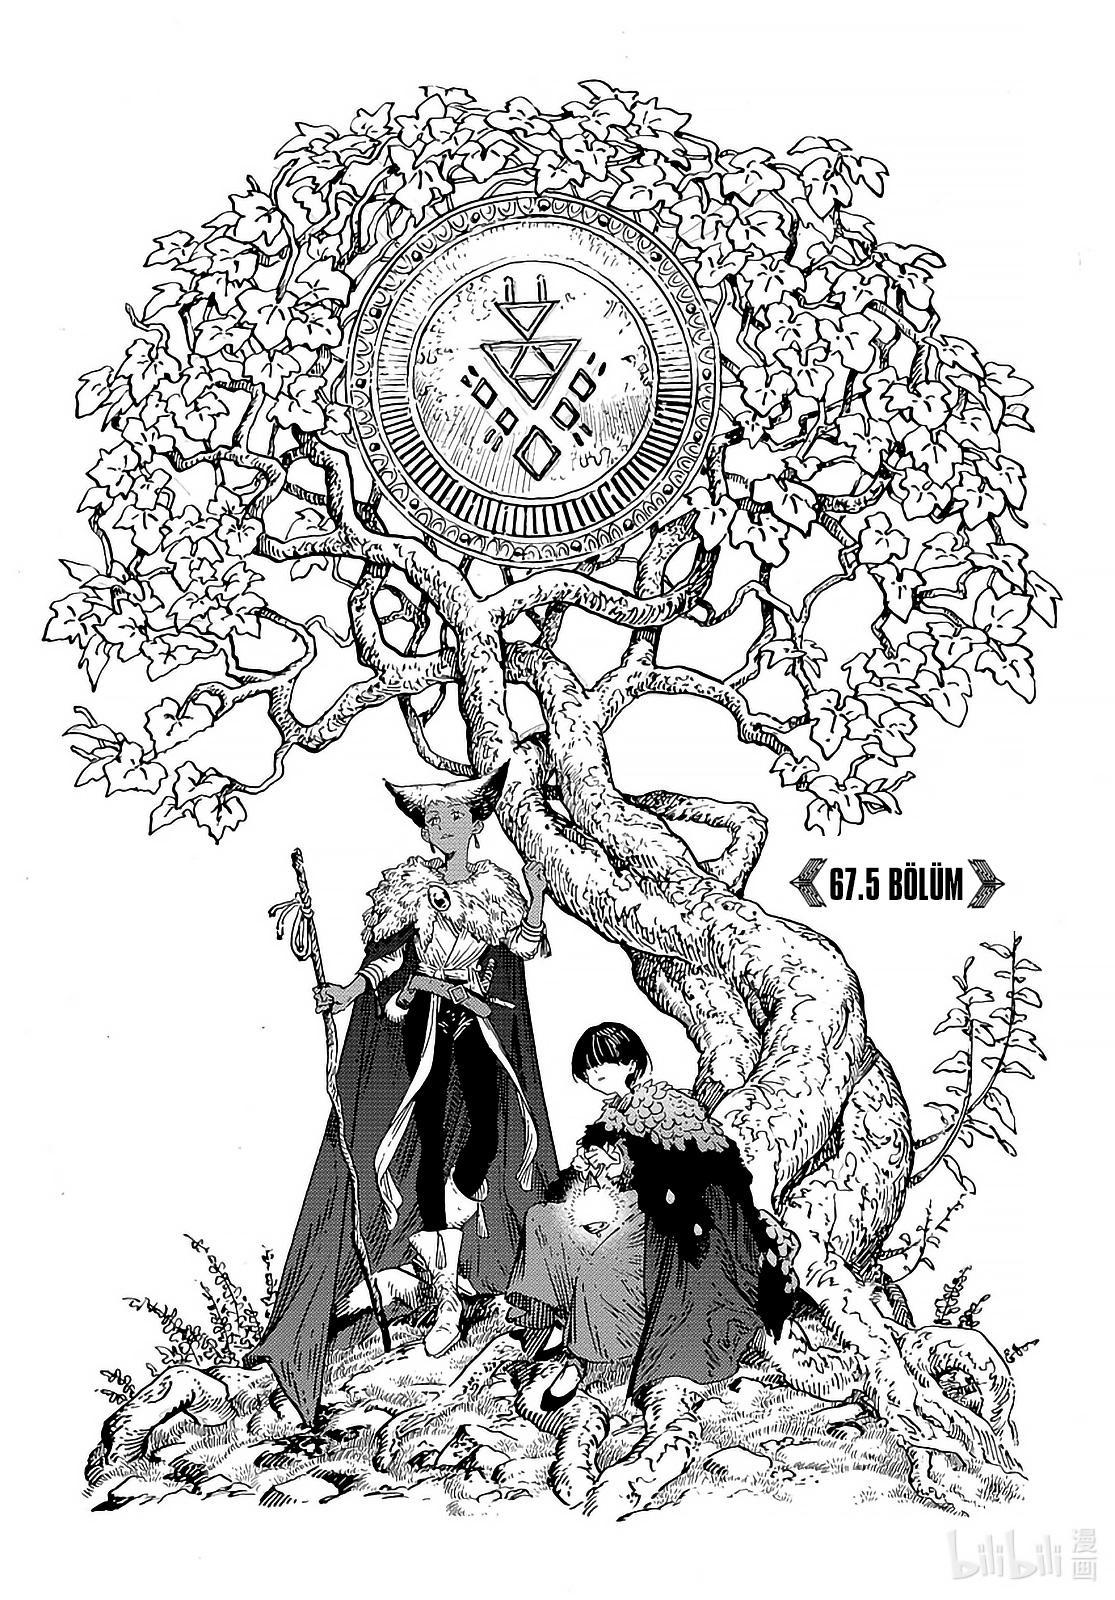 Atelier of Witch Hat mangasının 067.5 bölümünün 2. sayfasını okuyorsunuz.